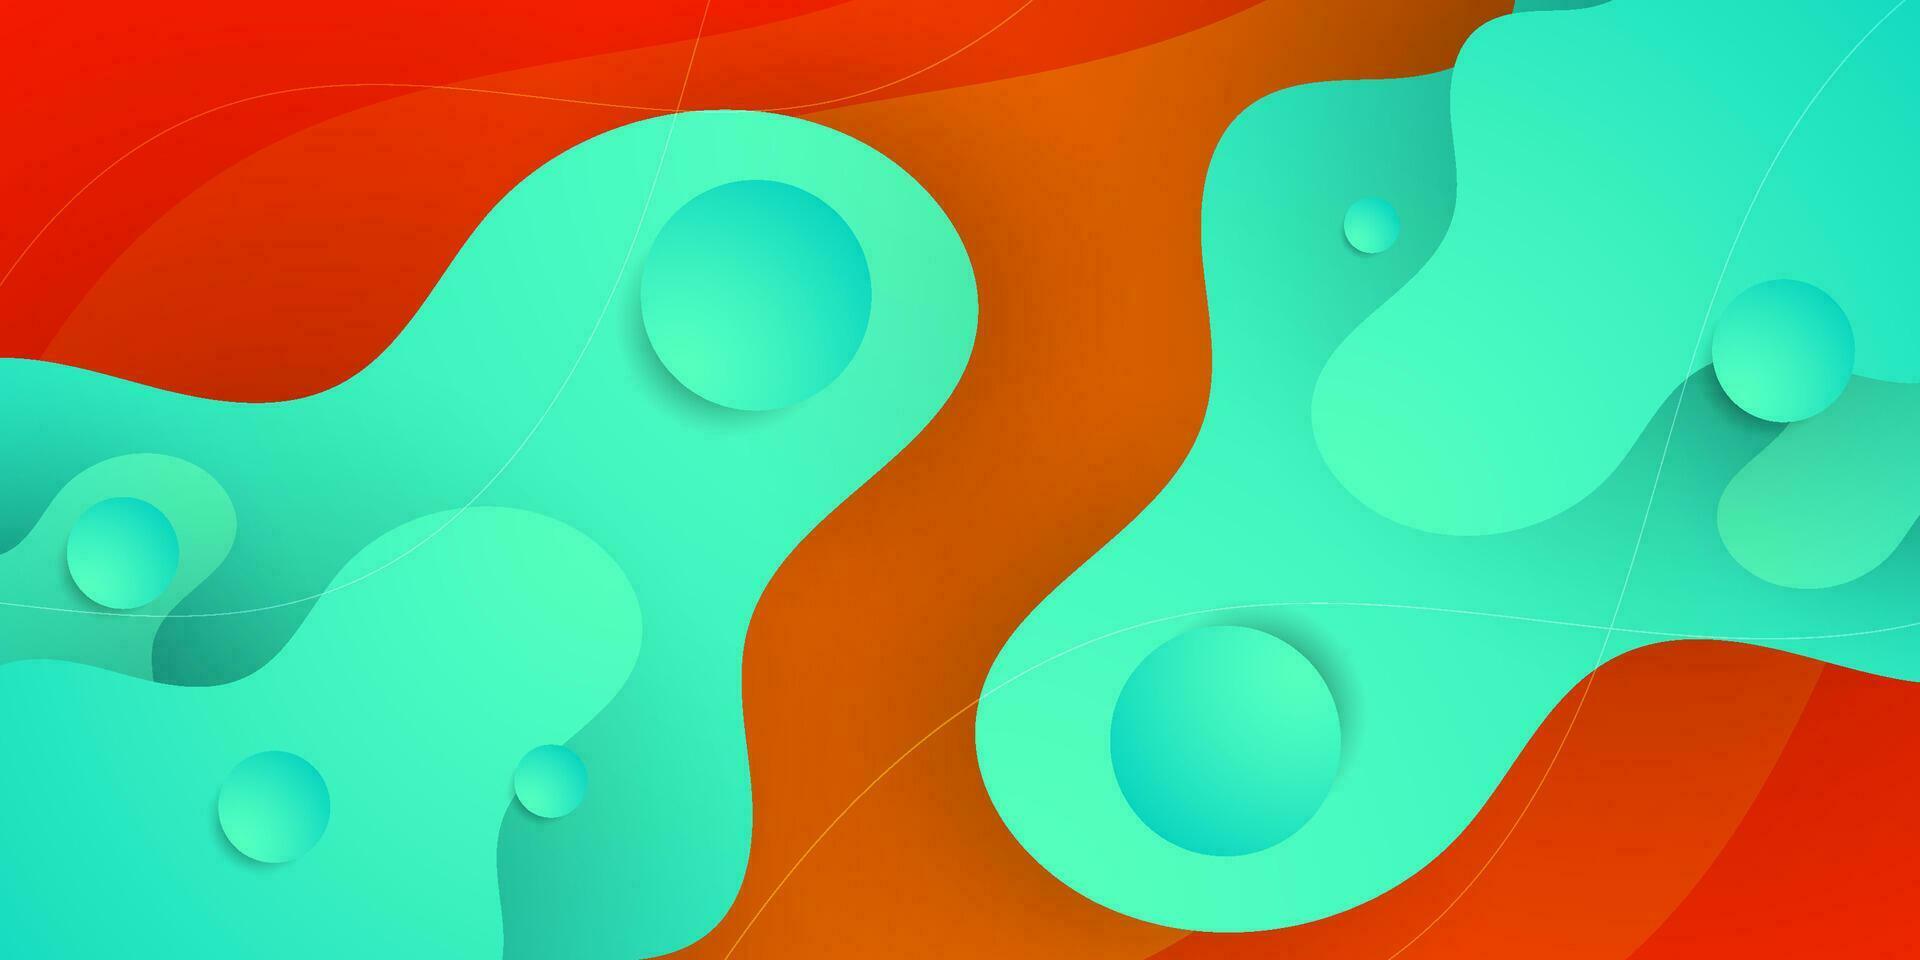 hell Grün Flüssigkeit gestalten auf Orange bunt Hintergrund. Flüssigkeit Stil Vektor abstrakt Komposition. eps10 Vektor